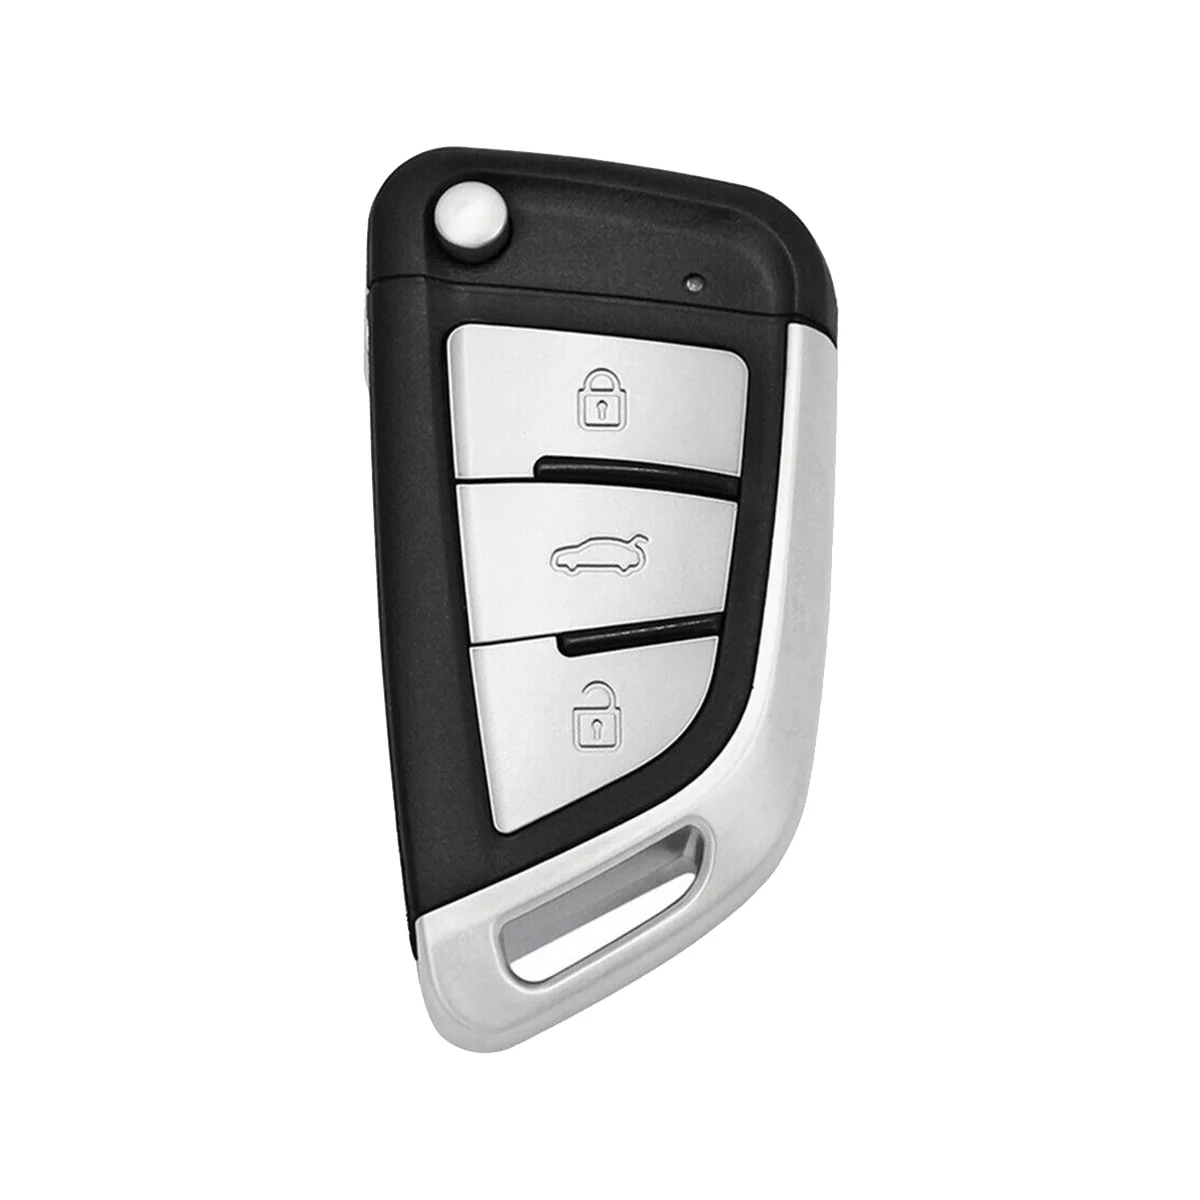 

KEYDIY B29 KD пульт дистанционного управления автомобильный ключ универсальный металлический 3 кнопки для BMW стиль для KD900/KD-X2 KD MINI/ URG200 программатор